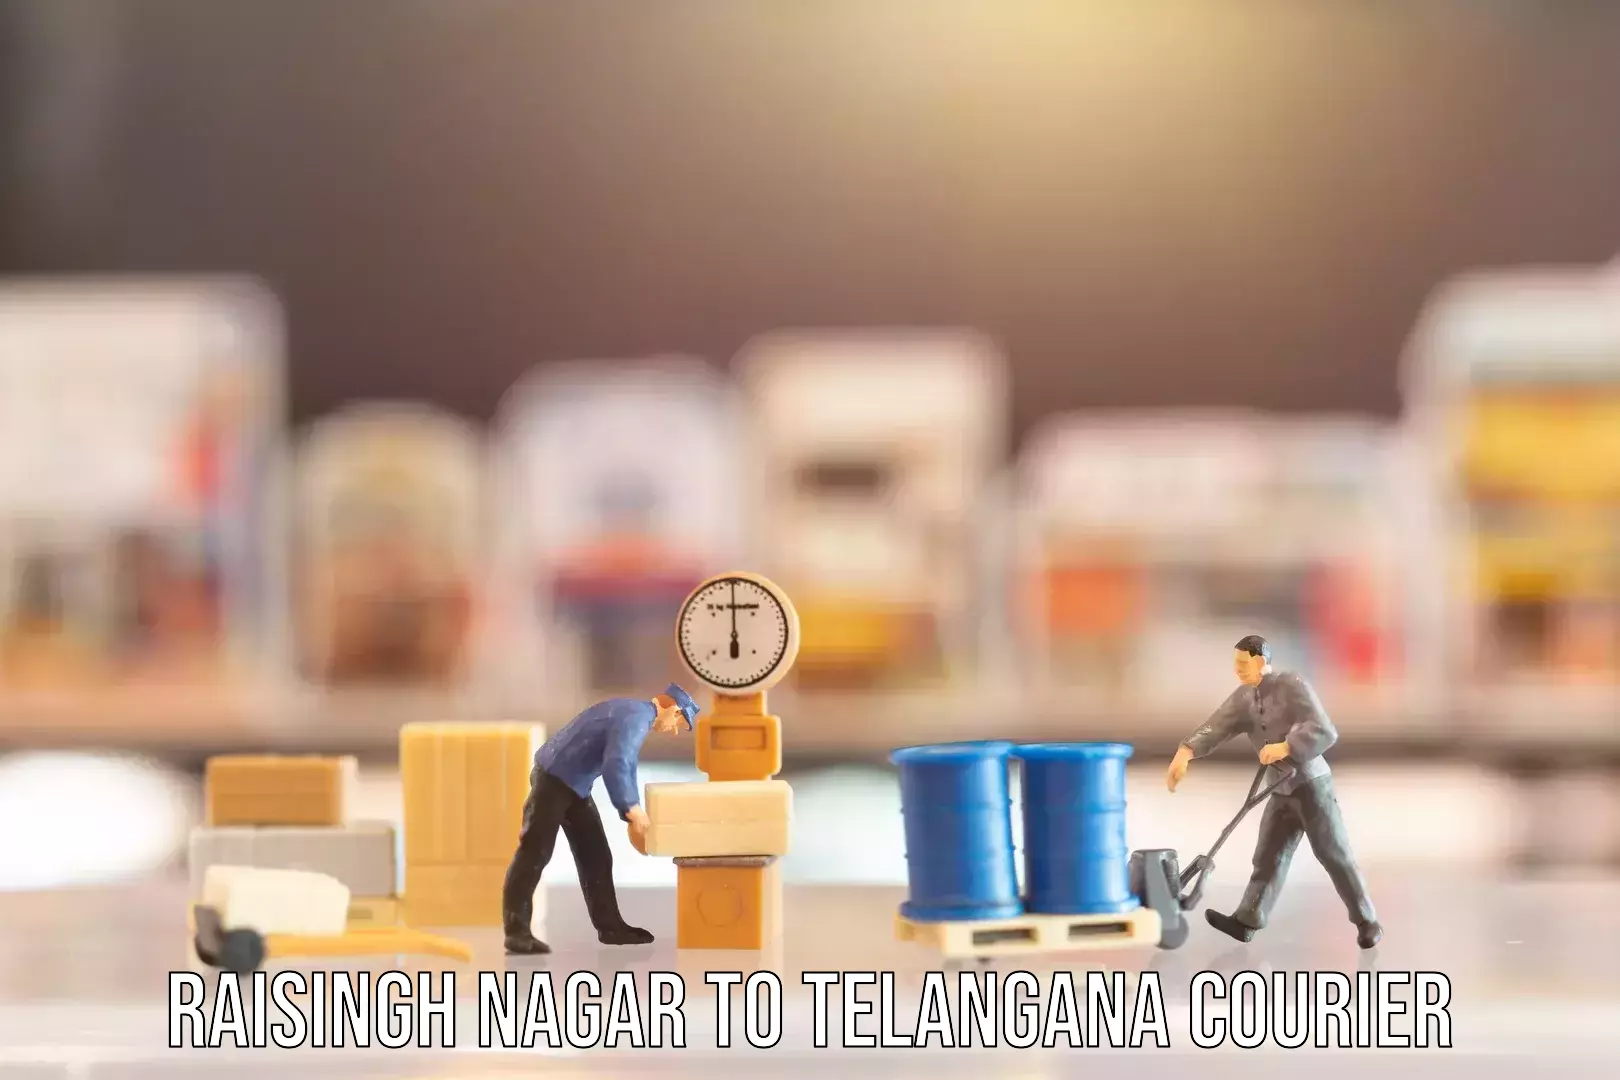 Corporate baggage transport Raisingh Nagar to Telangana